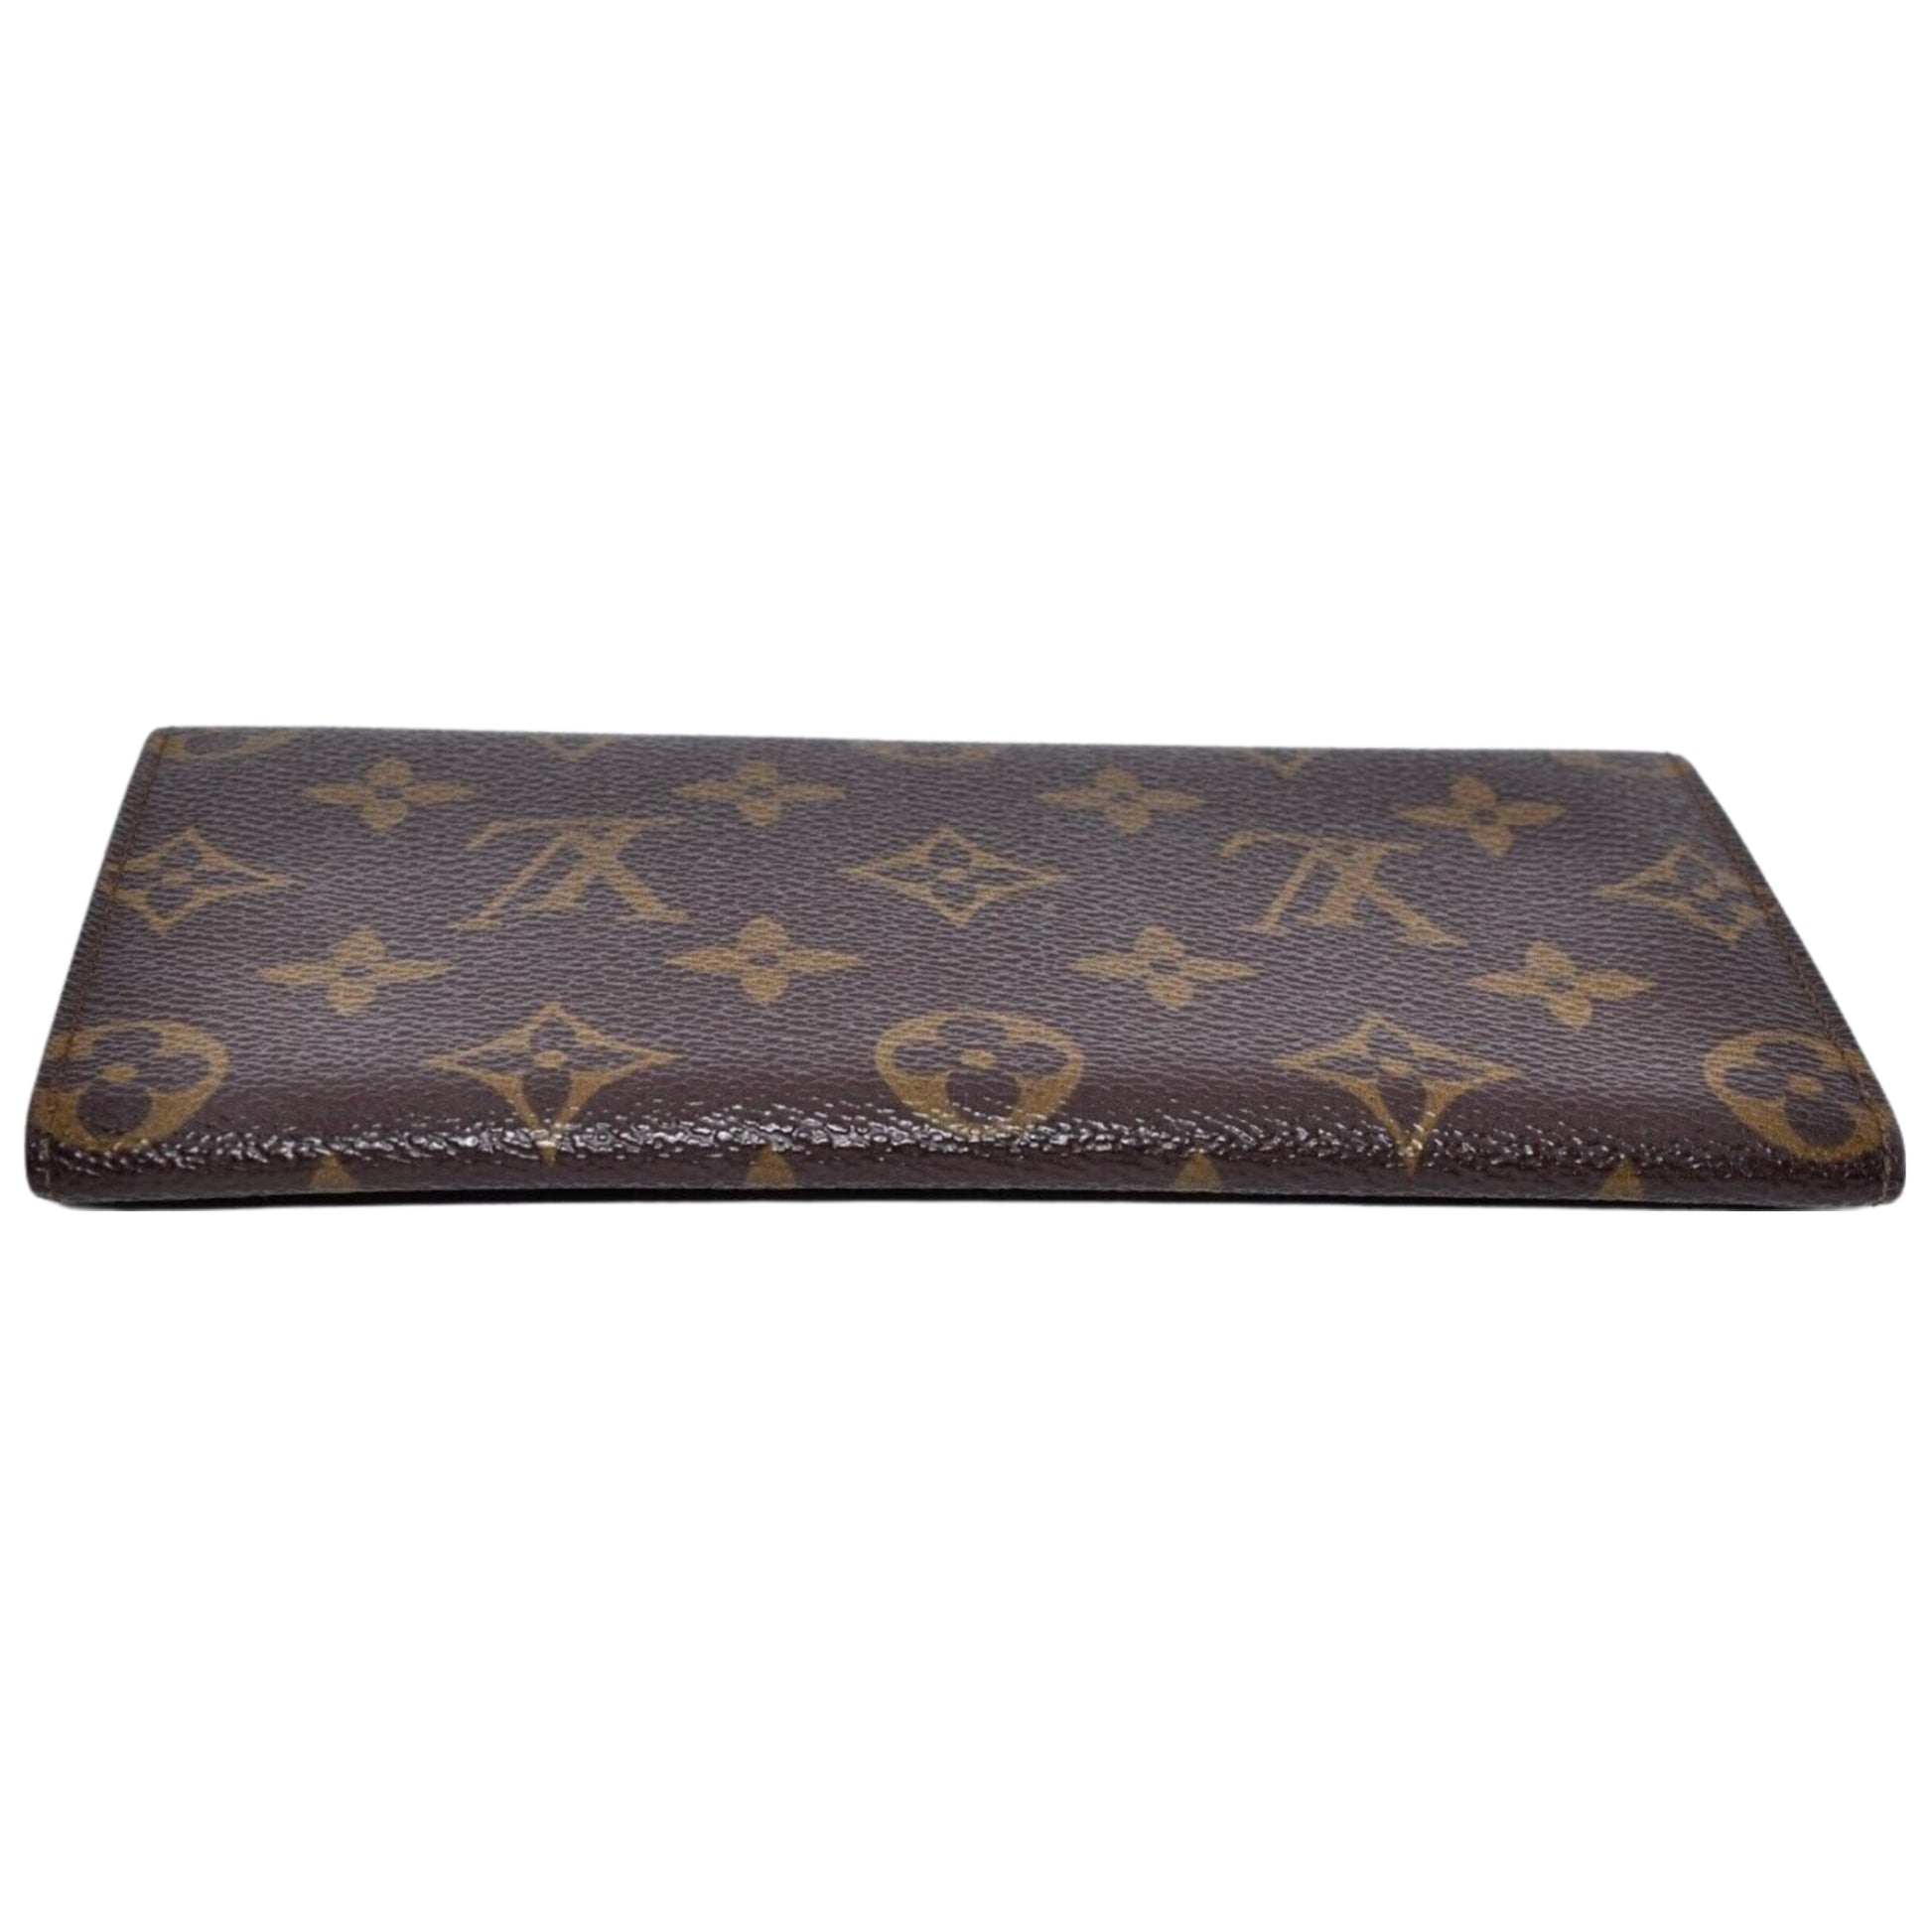 LOUIS VUITTON LV Monogram Leather Brown Bi-Fold PVC Long Wallet - Pre-Owned